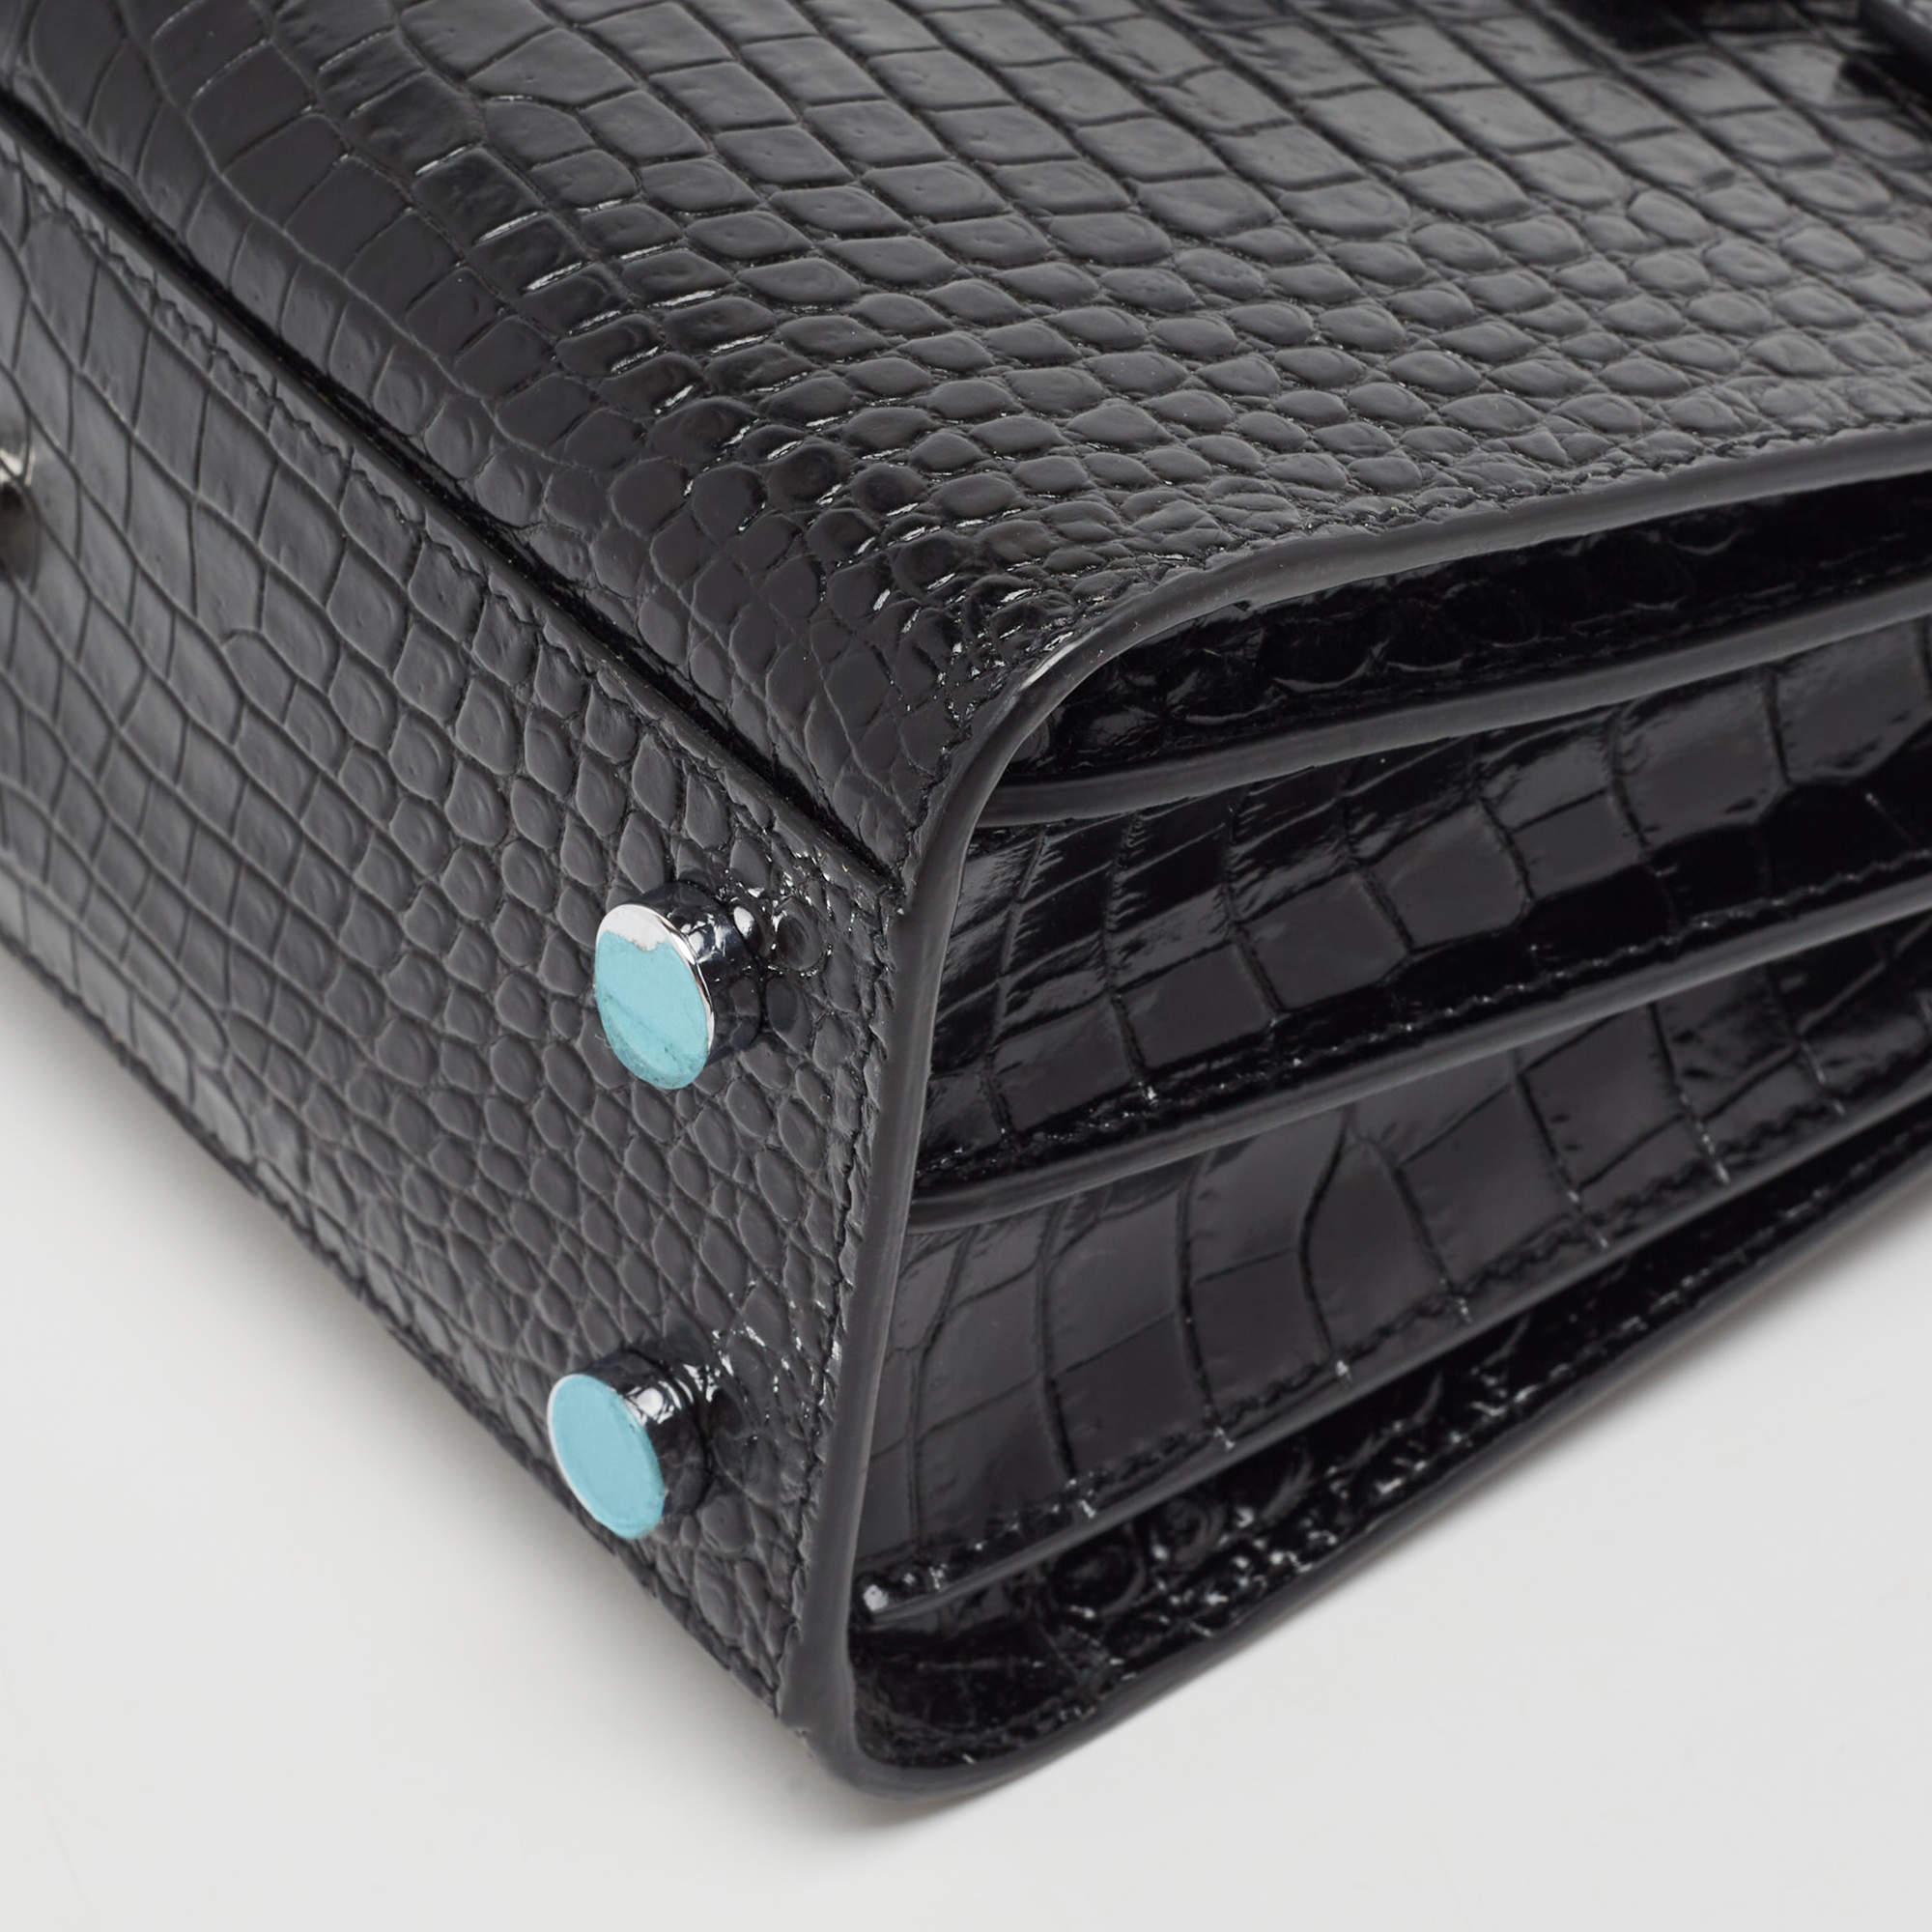 Women's Saint Laurent Black Croc Embossed Leather Nano Classic Sac De Jour Tote